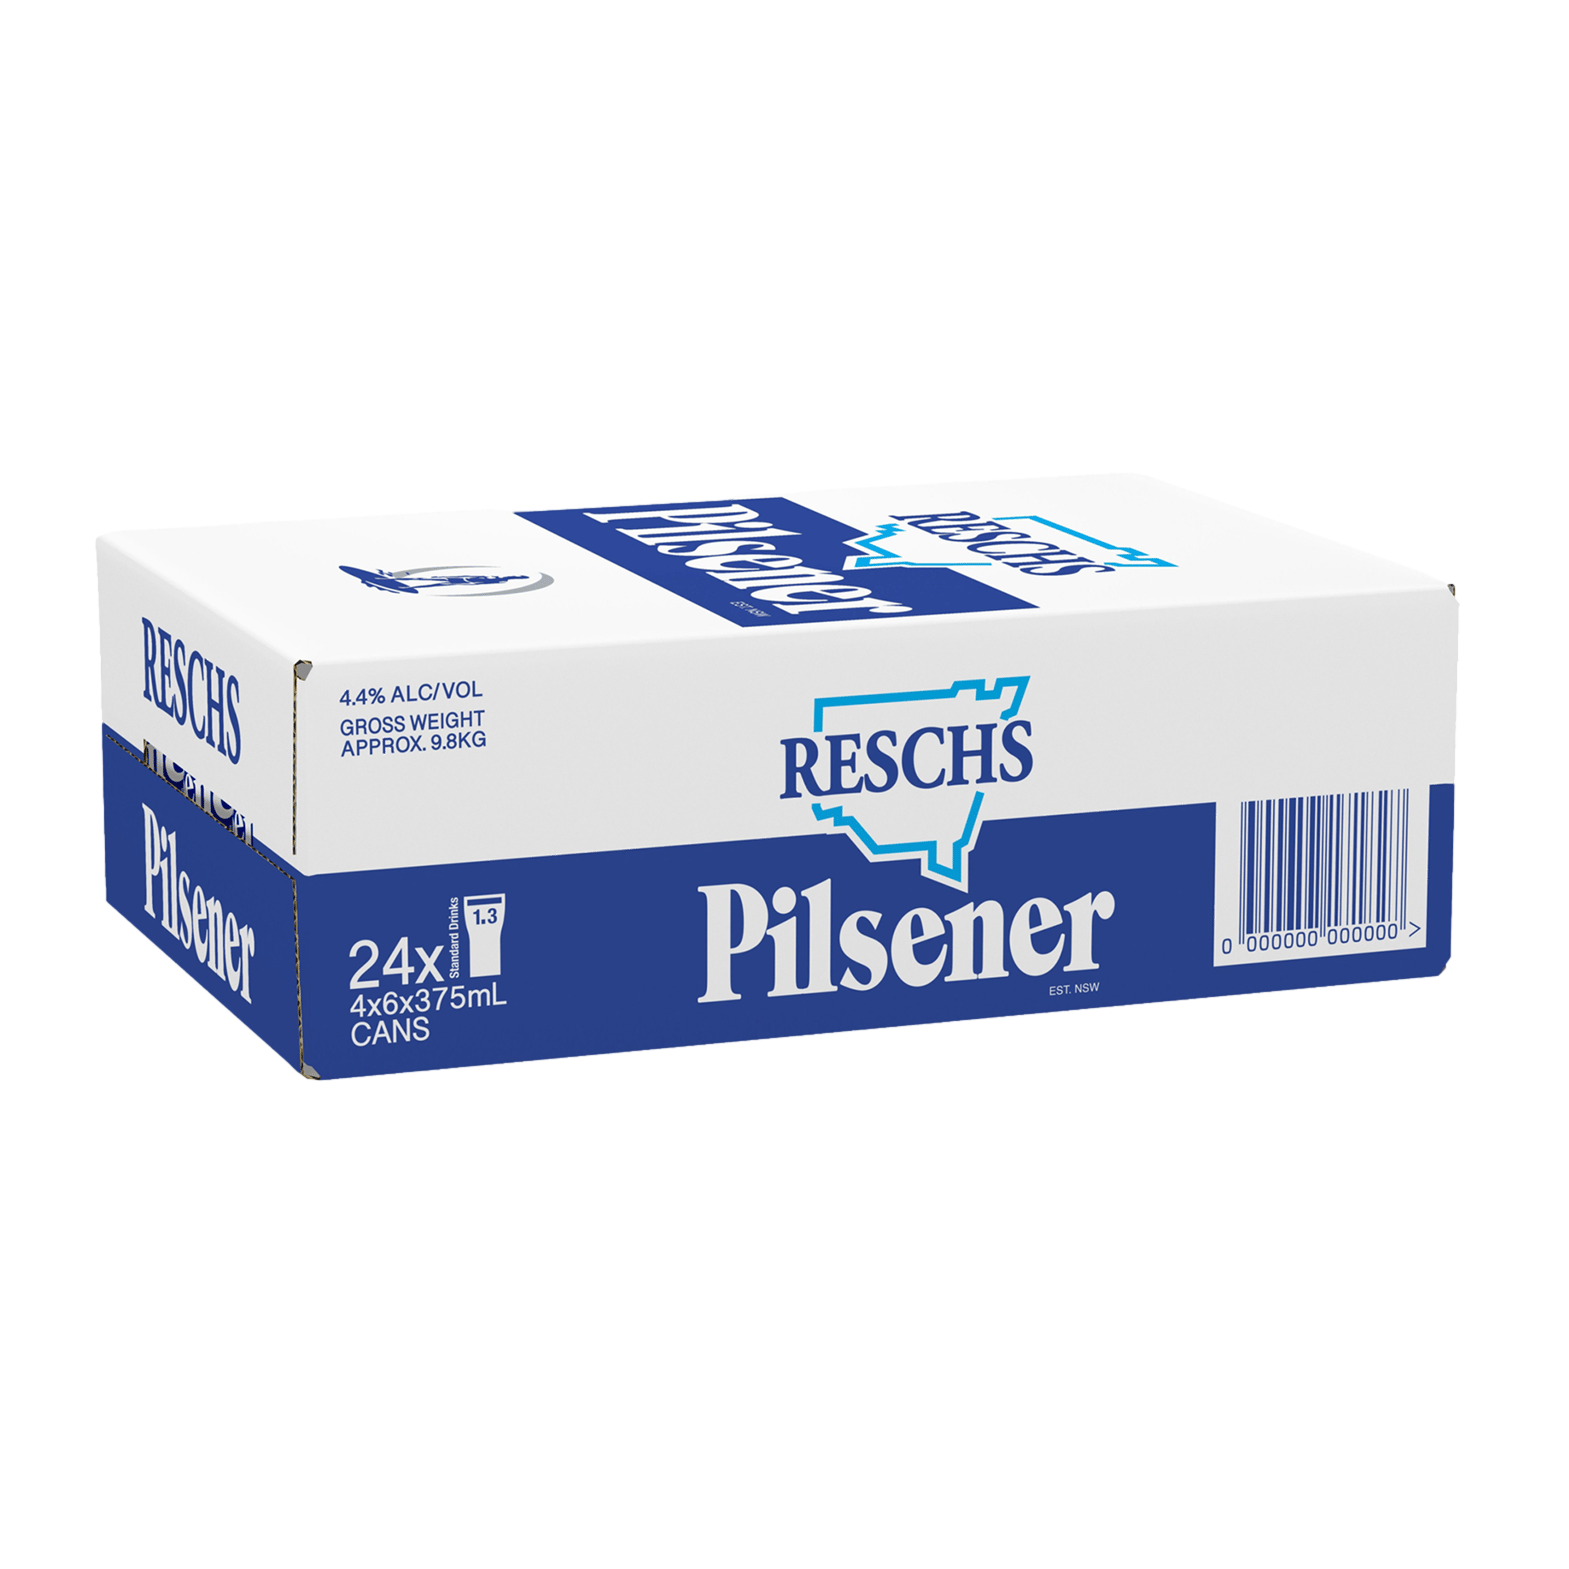 Reschs Pilsener 375ml Can Case of 24